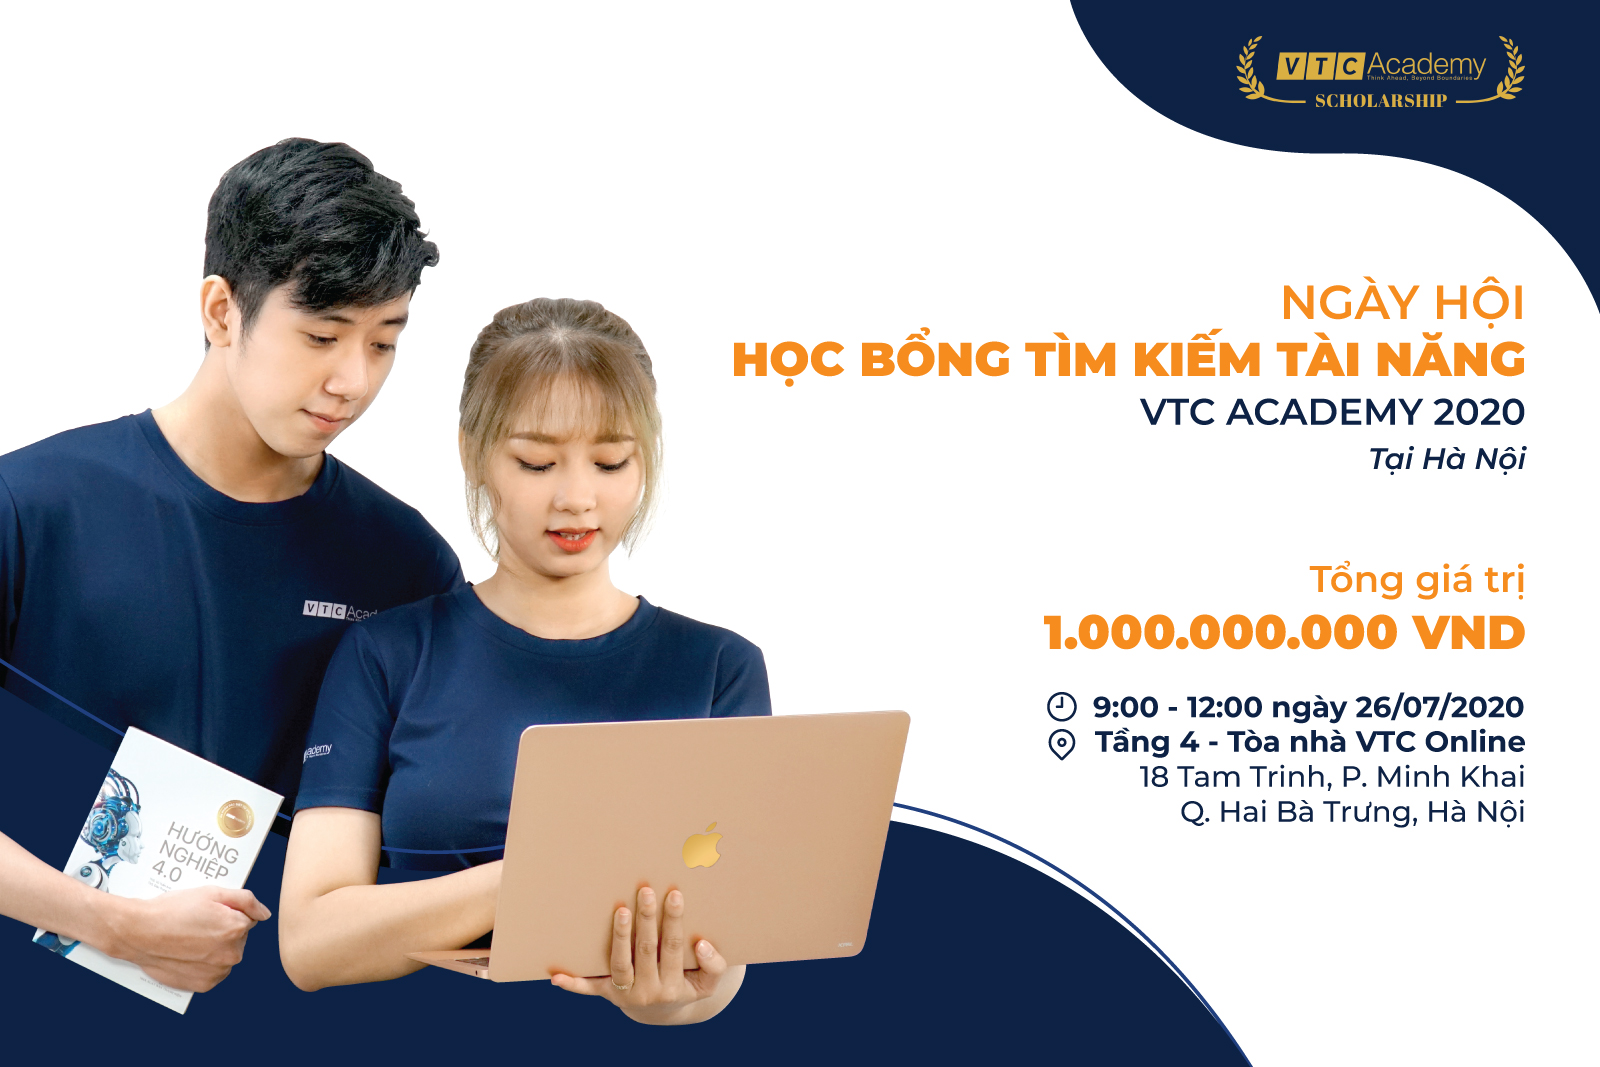 Ngày hội Học bổng Tài năng 2020 lần 1 tại Hà Nội